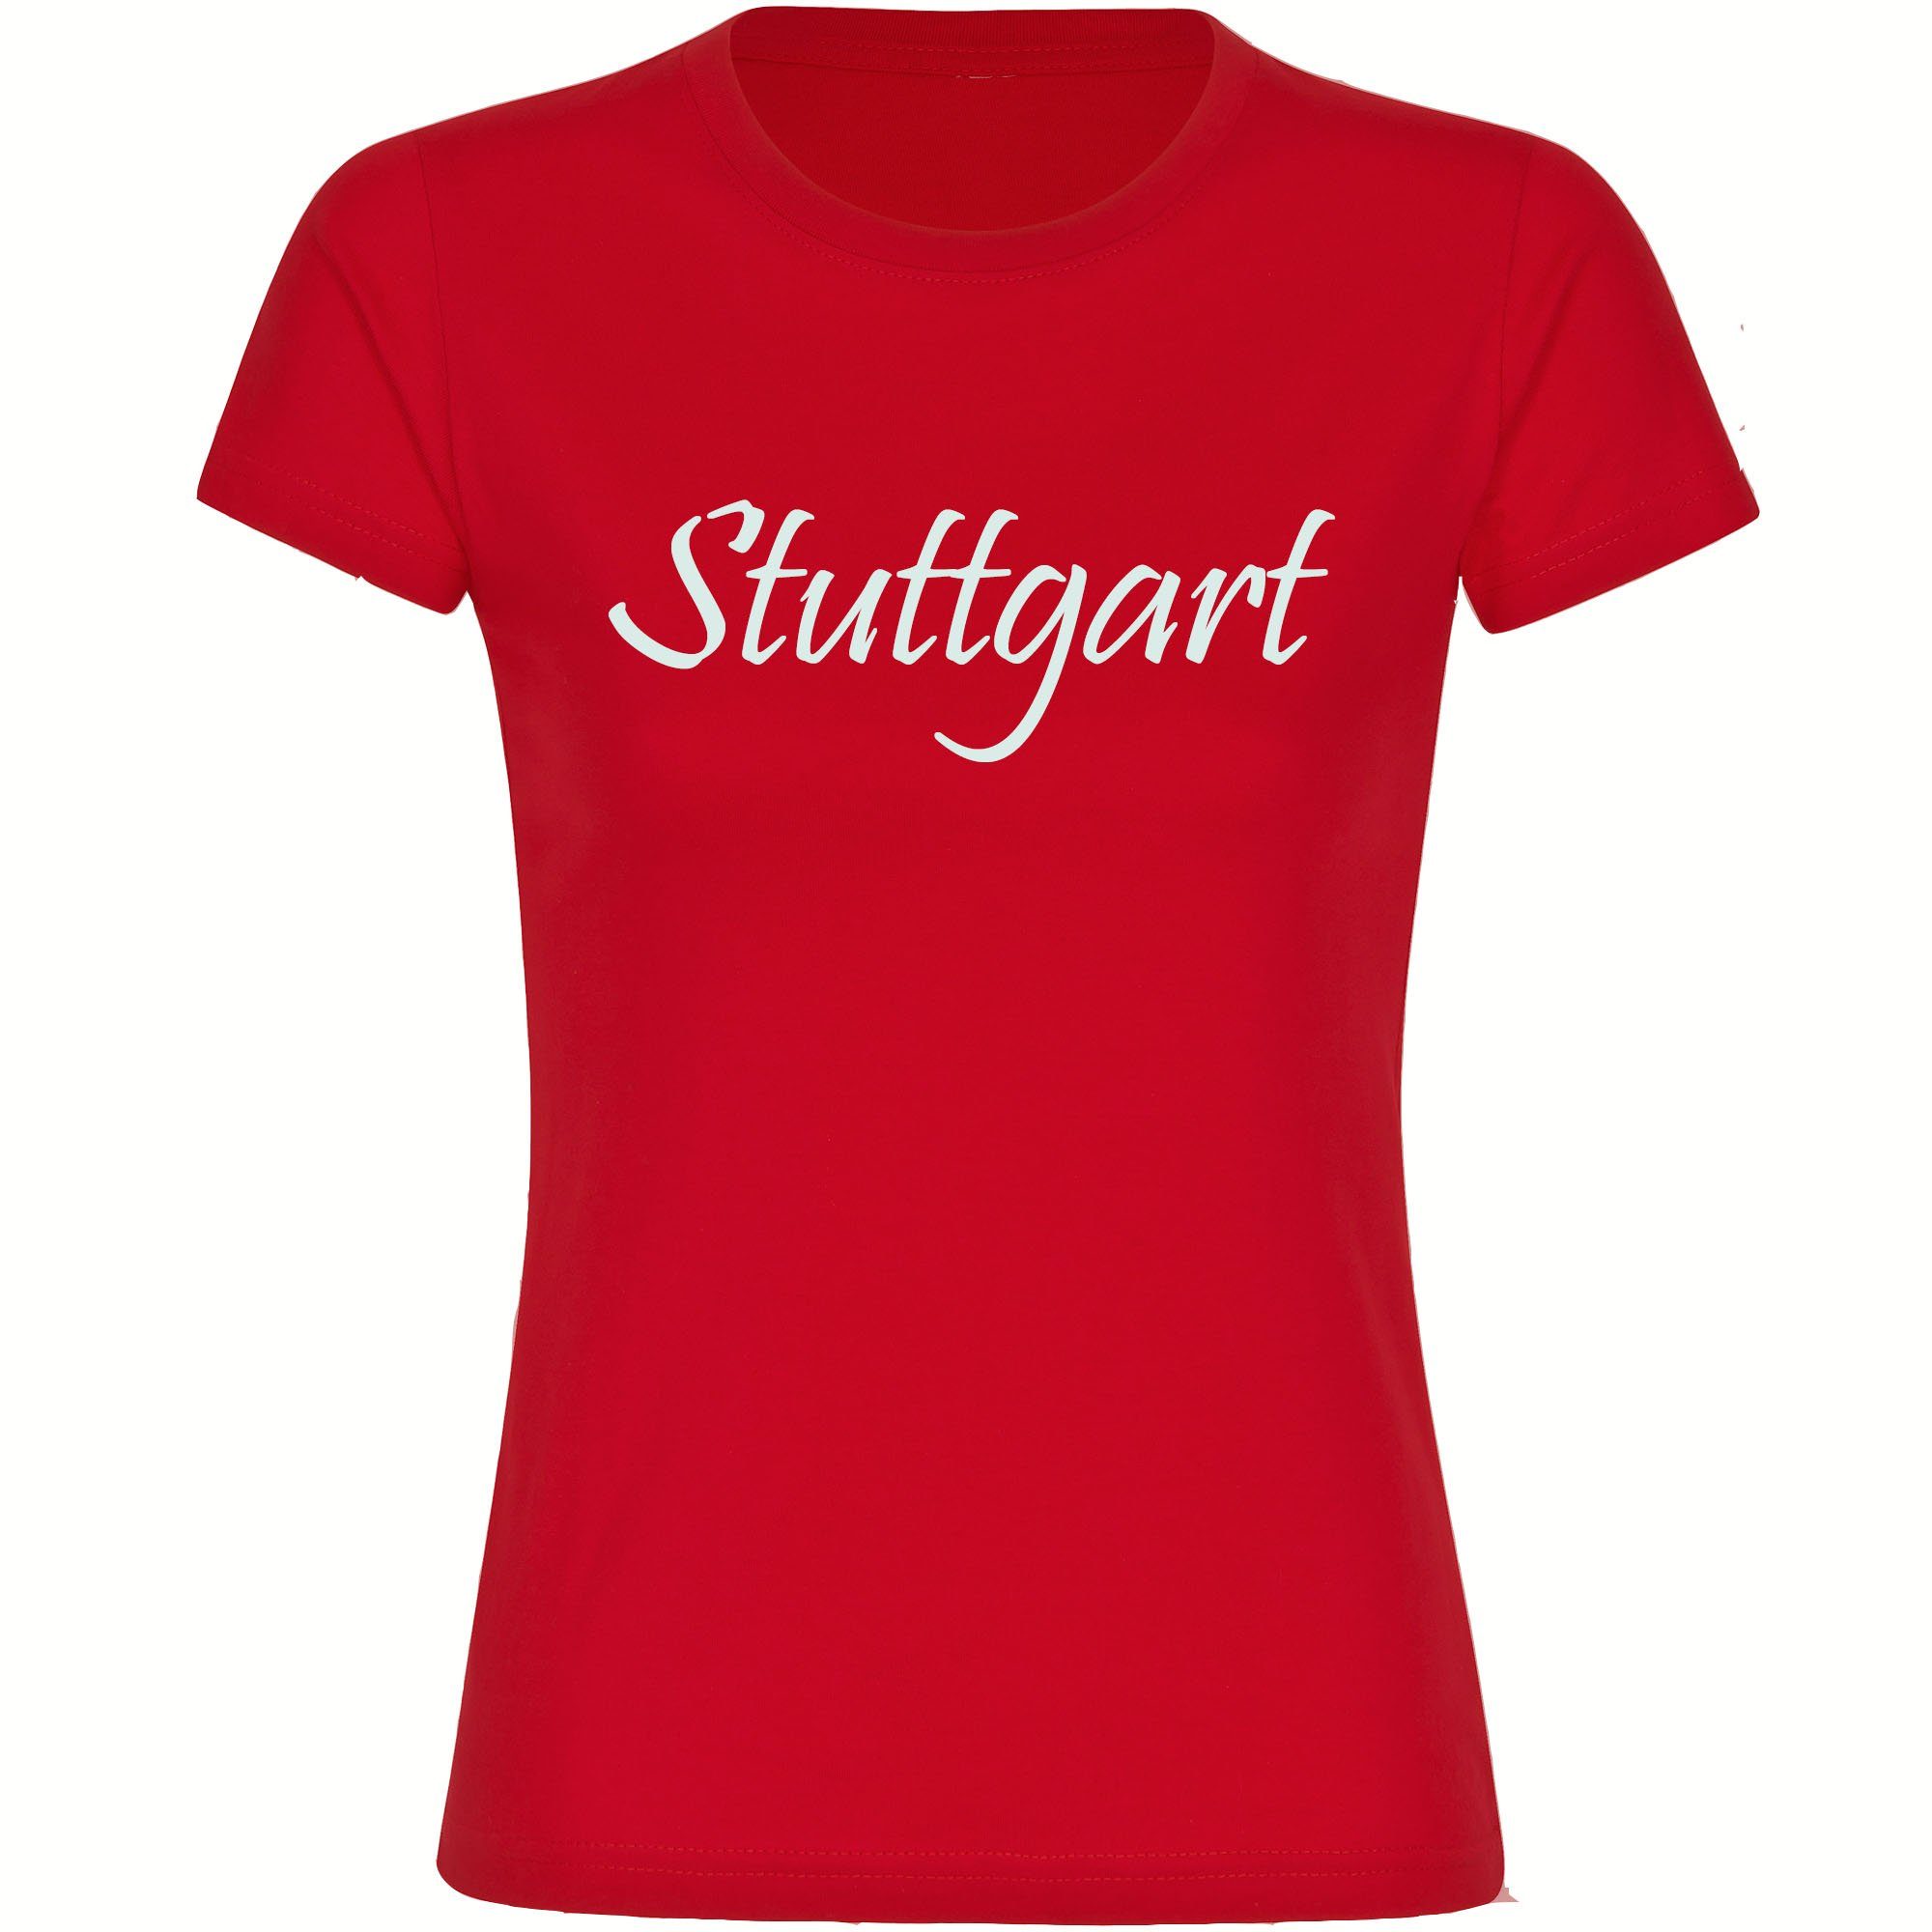 multifanshop T-Shirt Damen Stuttgart - Schriftzug - Frauen